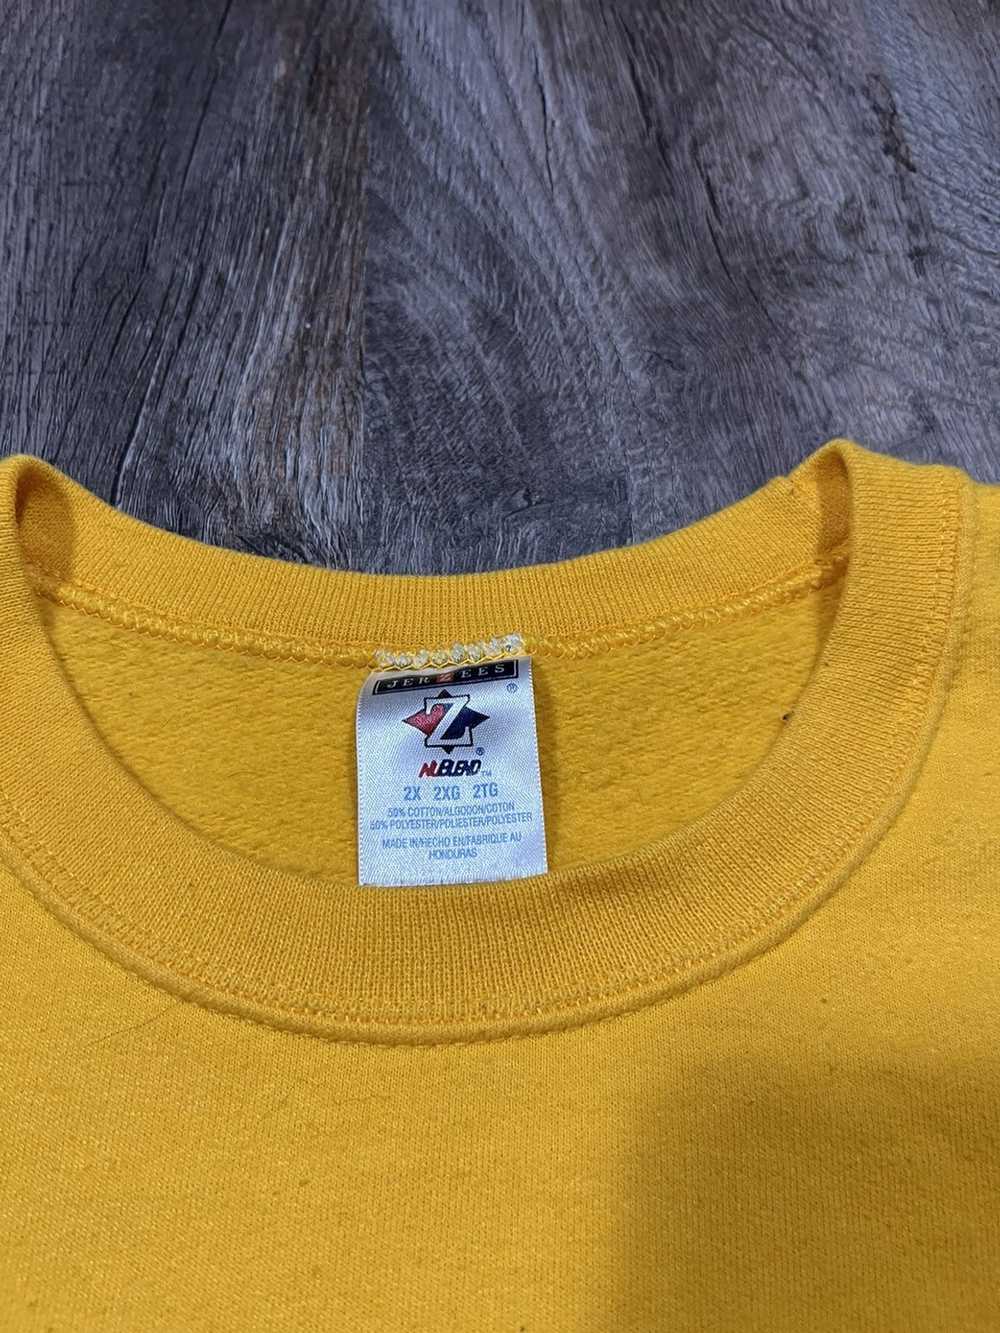 Vintage Vintage Minnesota Vikings Sweatshirt - image 4